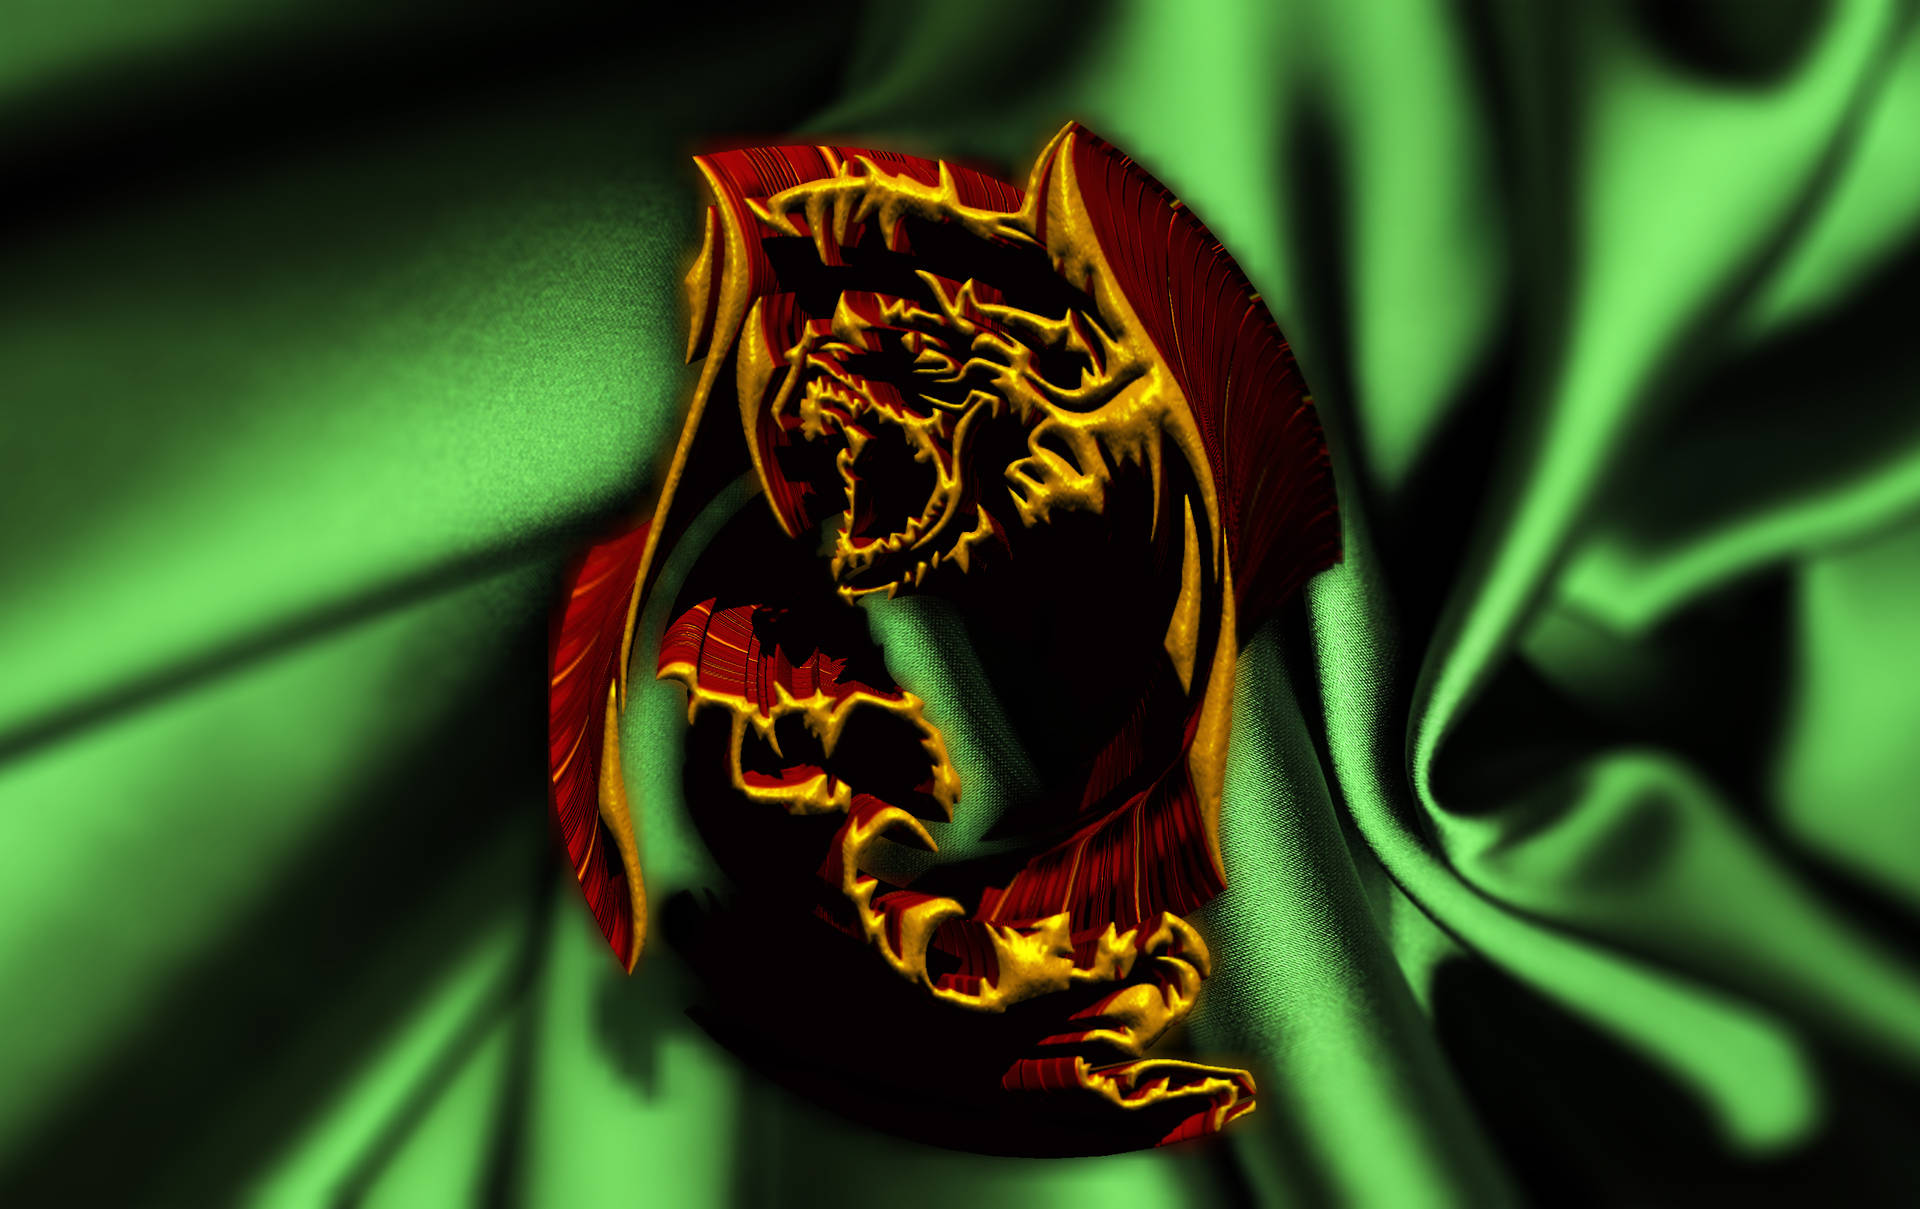 Emblemarojo De Dragón 3d De Alta Definición. Fondo de pantalla